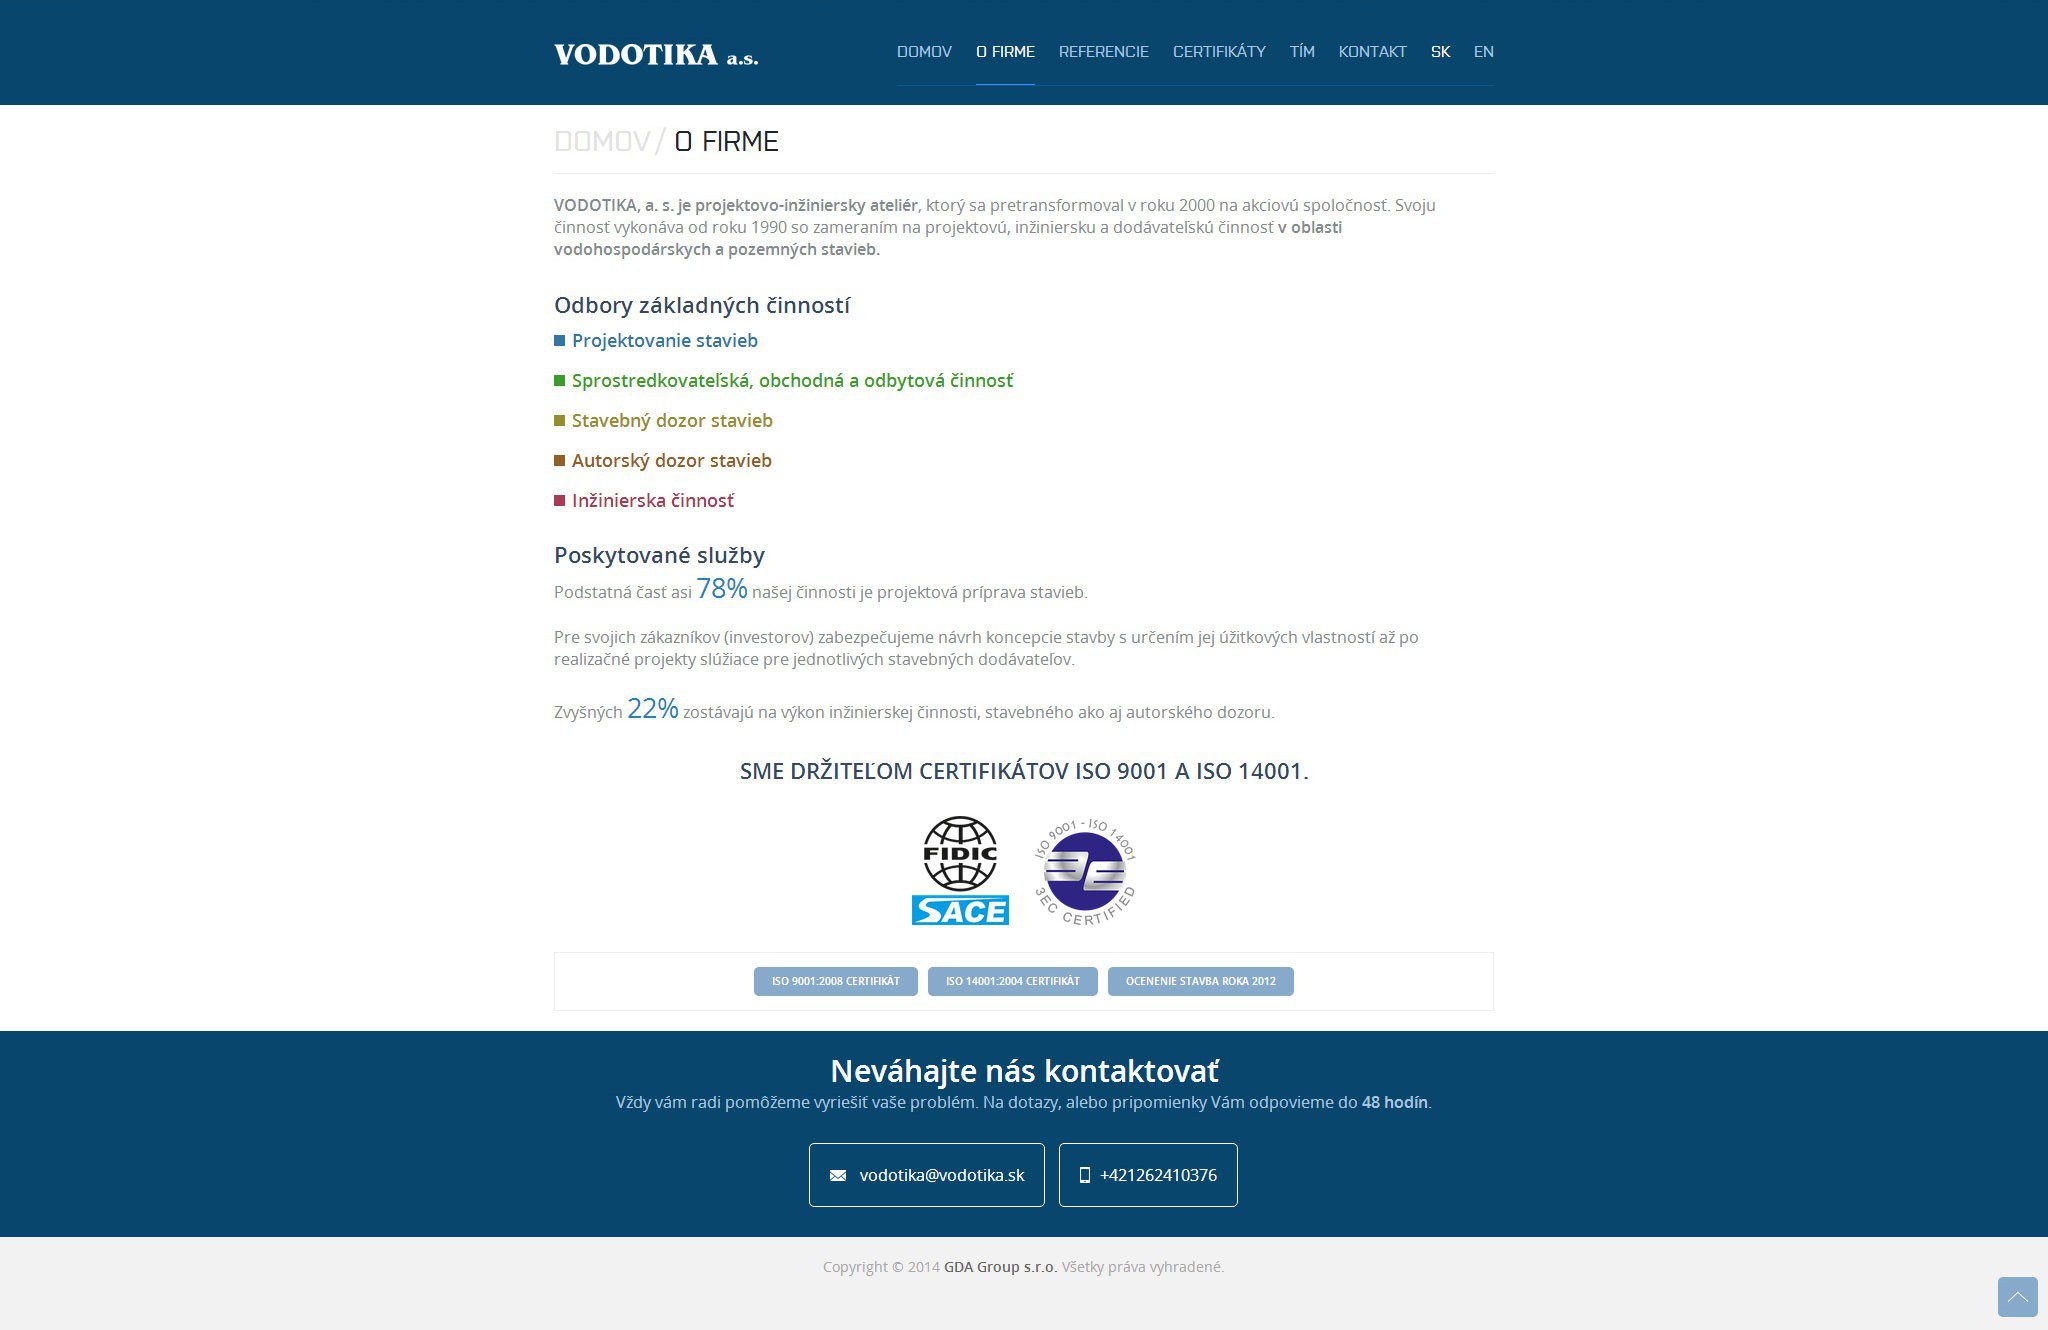 Образование веб-сайтов - VODOTIKA, a.s. - подробно Компания